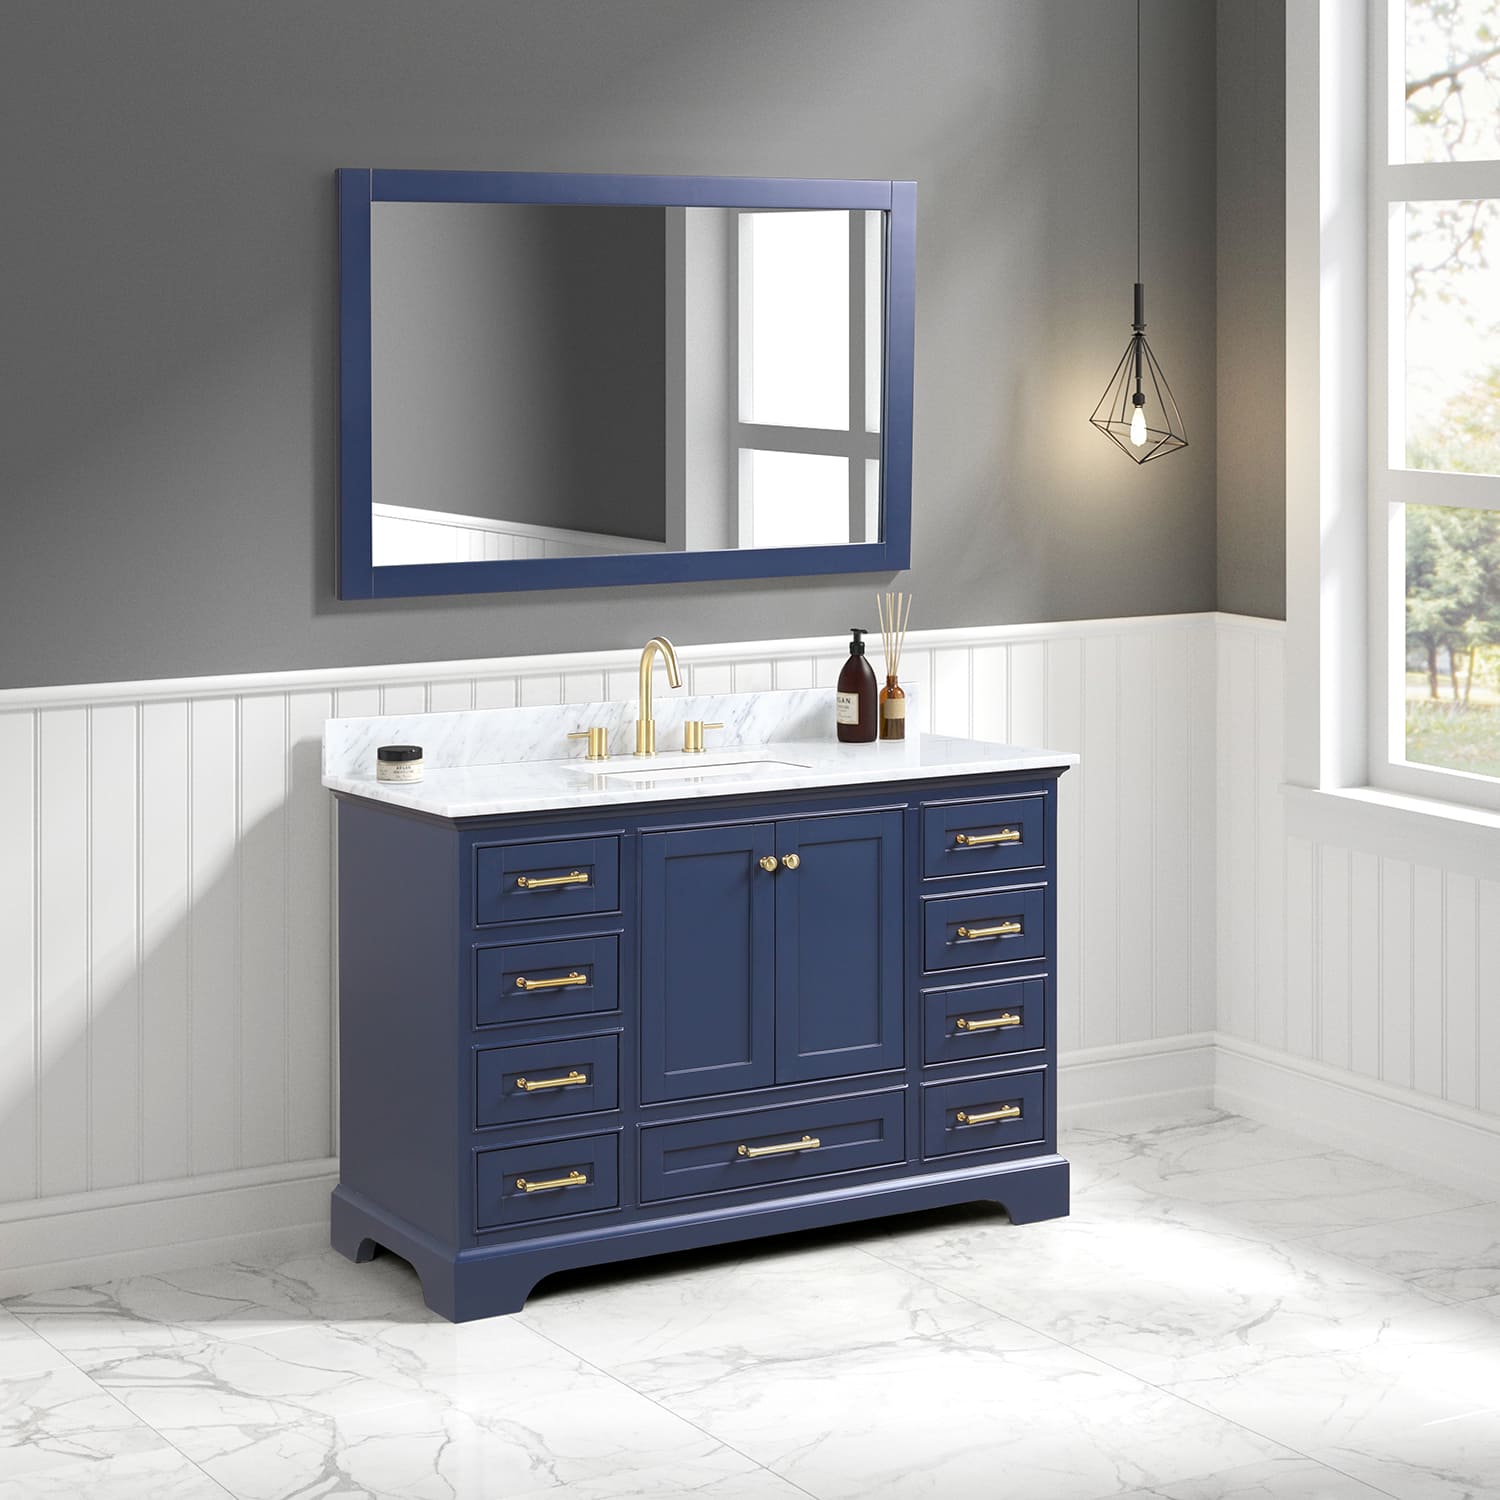 Copenhagen 48" Bathroom Vanity  #size_48"  #color_navy blue